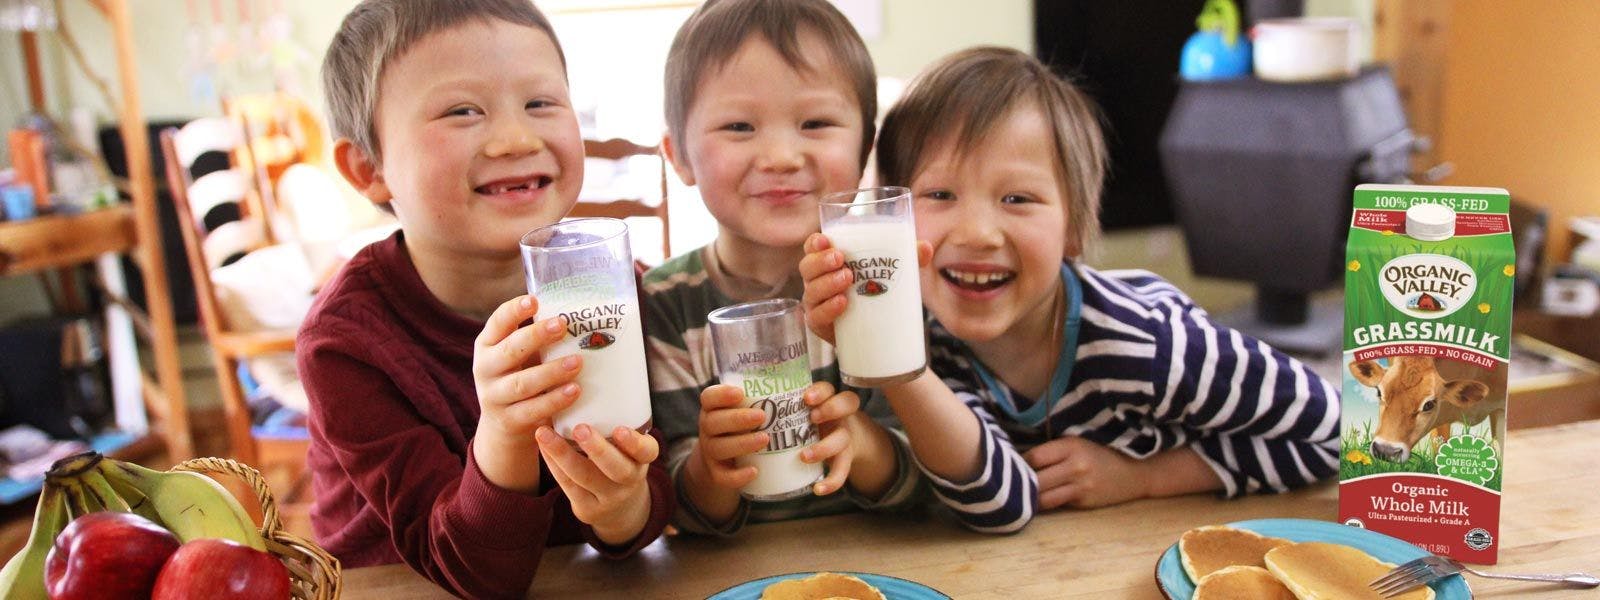 Children drinking Organic Valley Grassmilk Milk